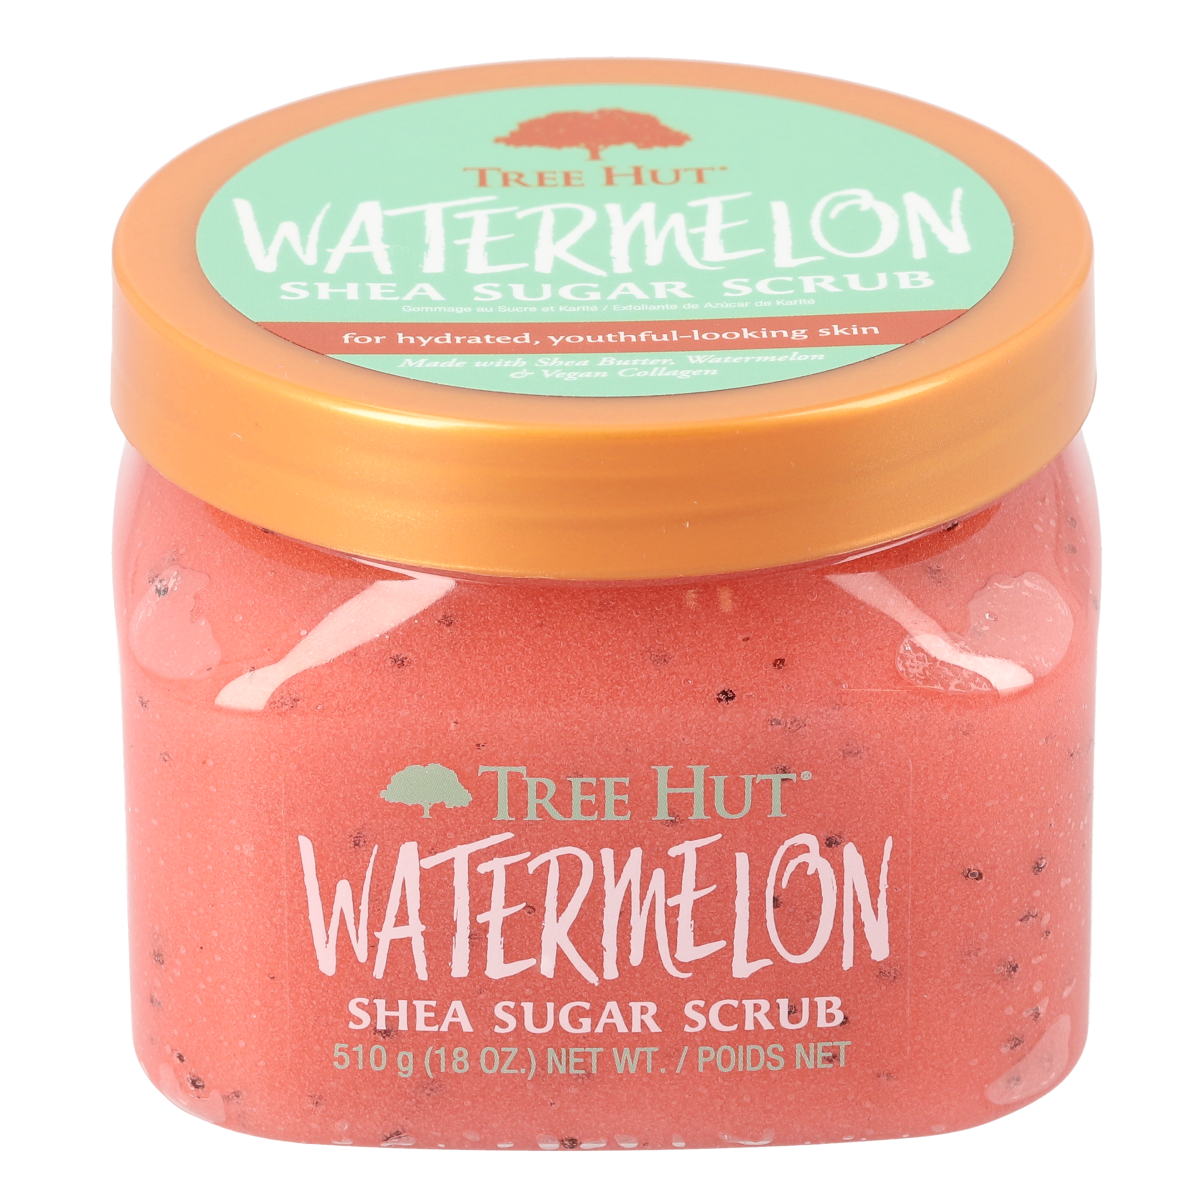 Watermelon shea sugar scrub - tree hut - nuestro secreto